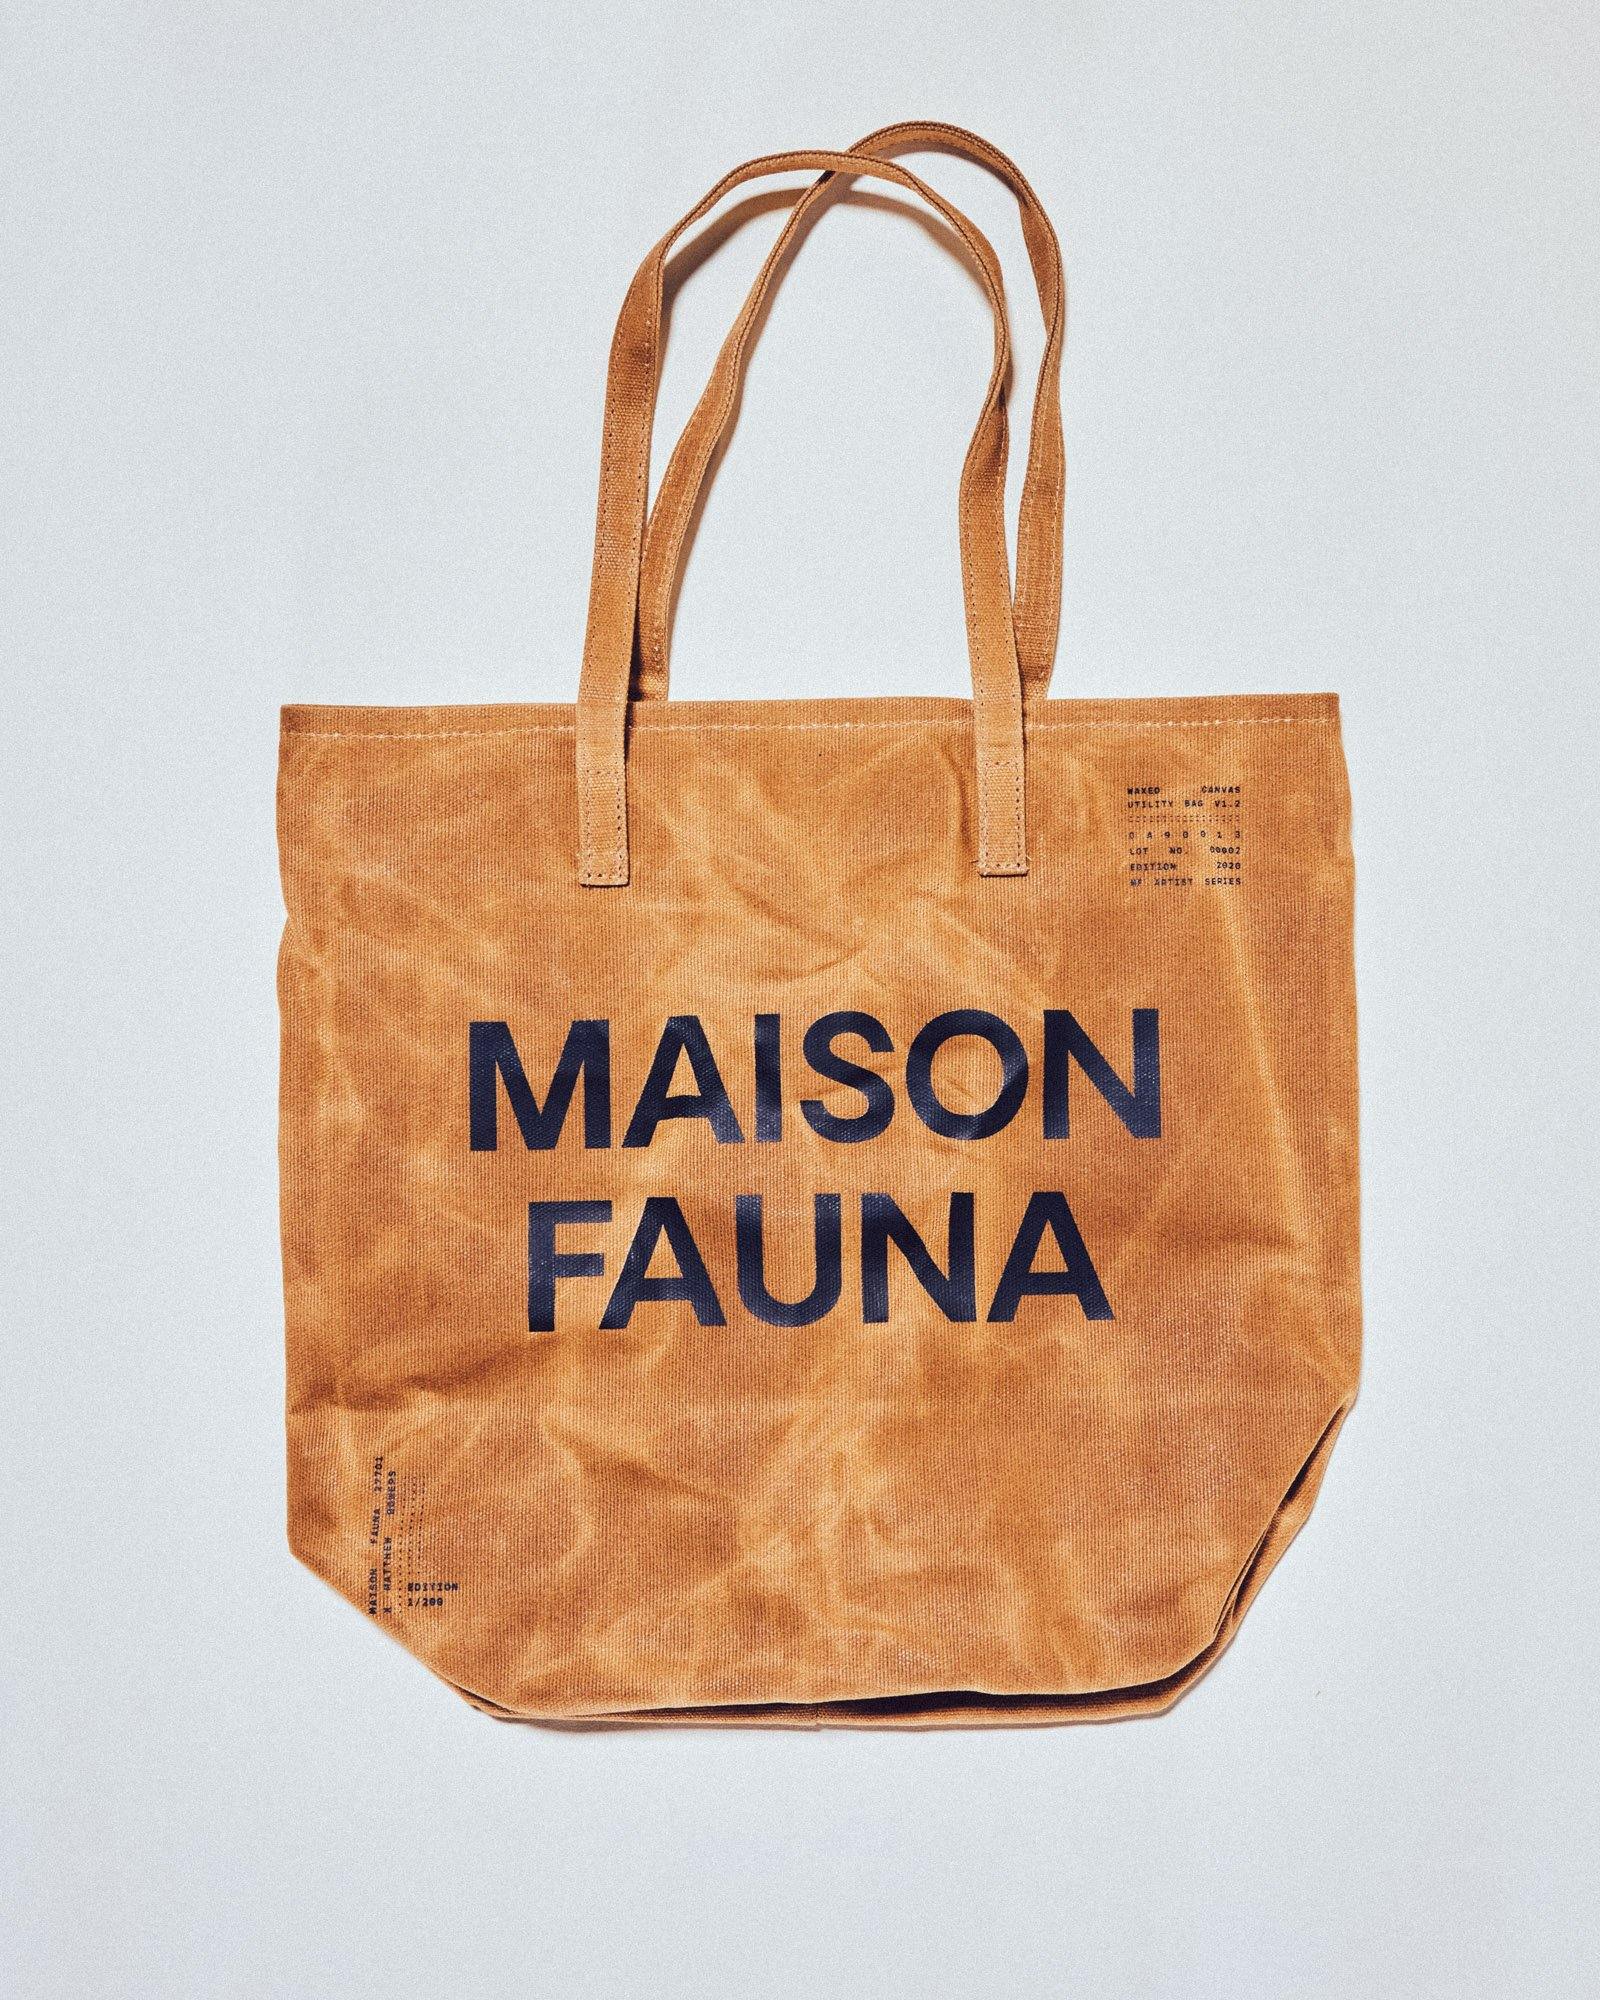 maison fauna x MFTR durable canvas bag - Manufactur Studio